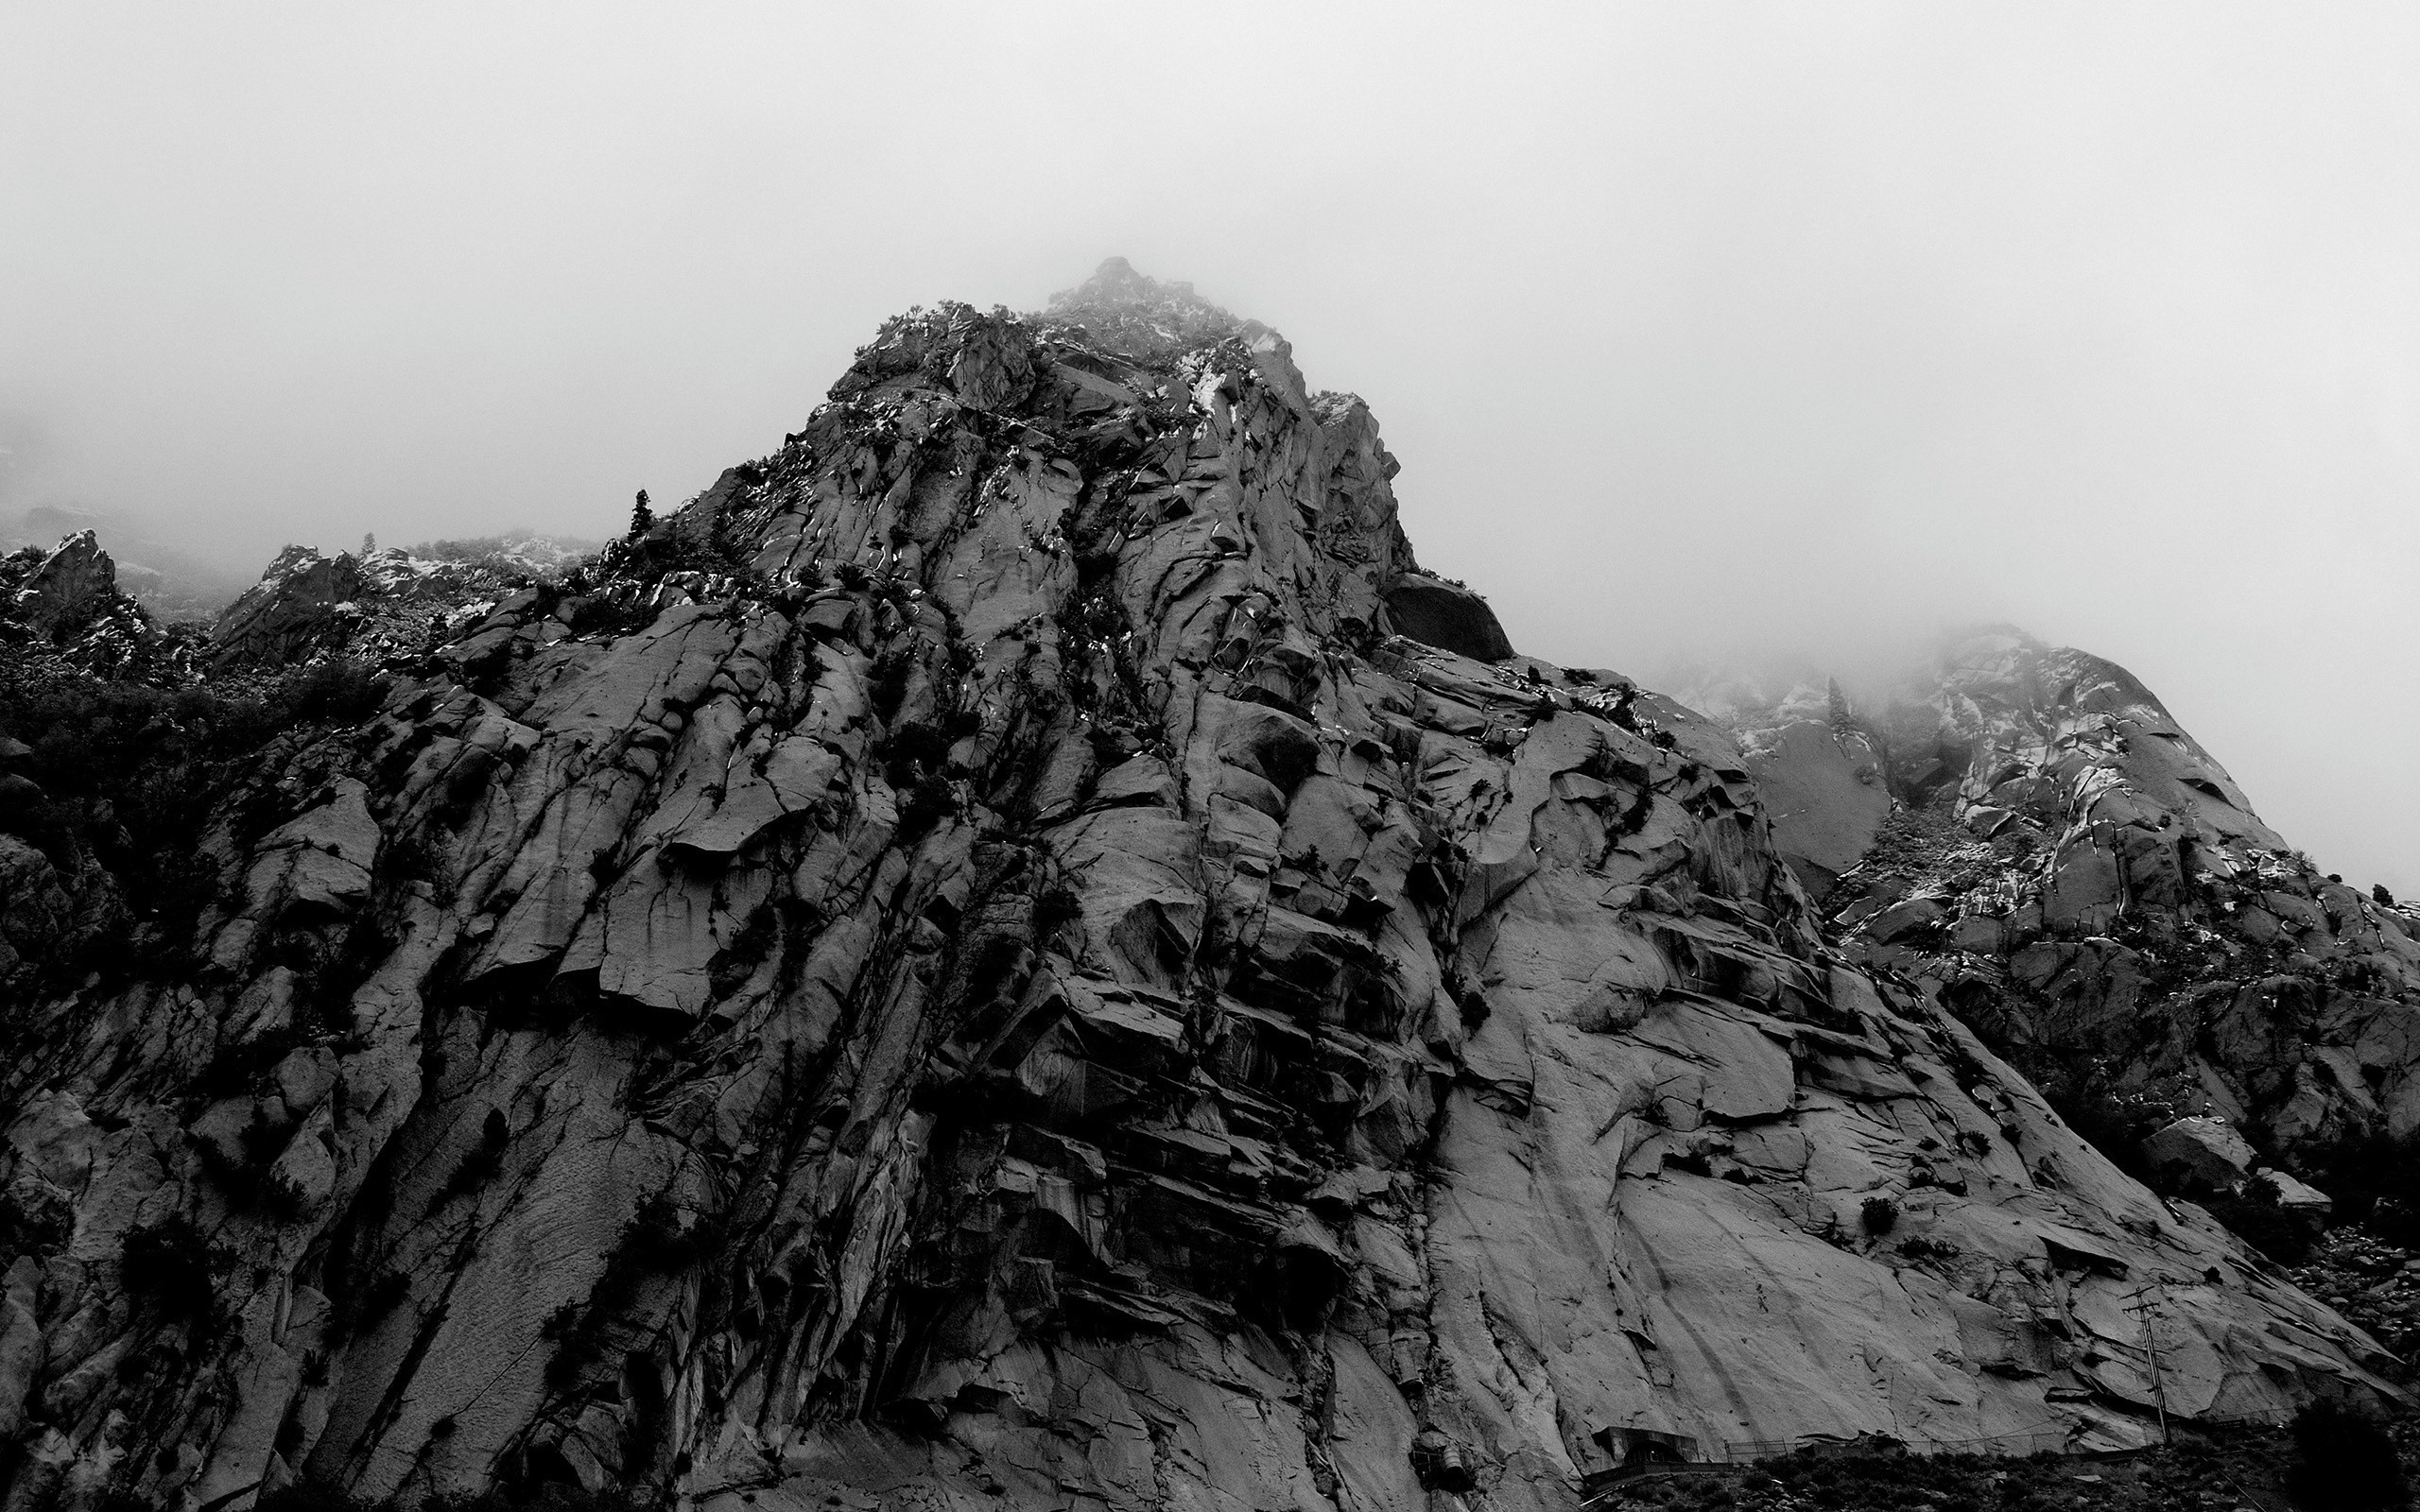 General 2560x1600 photography mountains mist nature rocks landscape monochrome